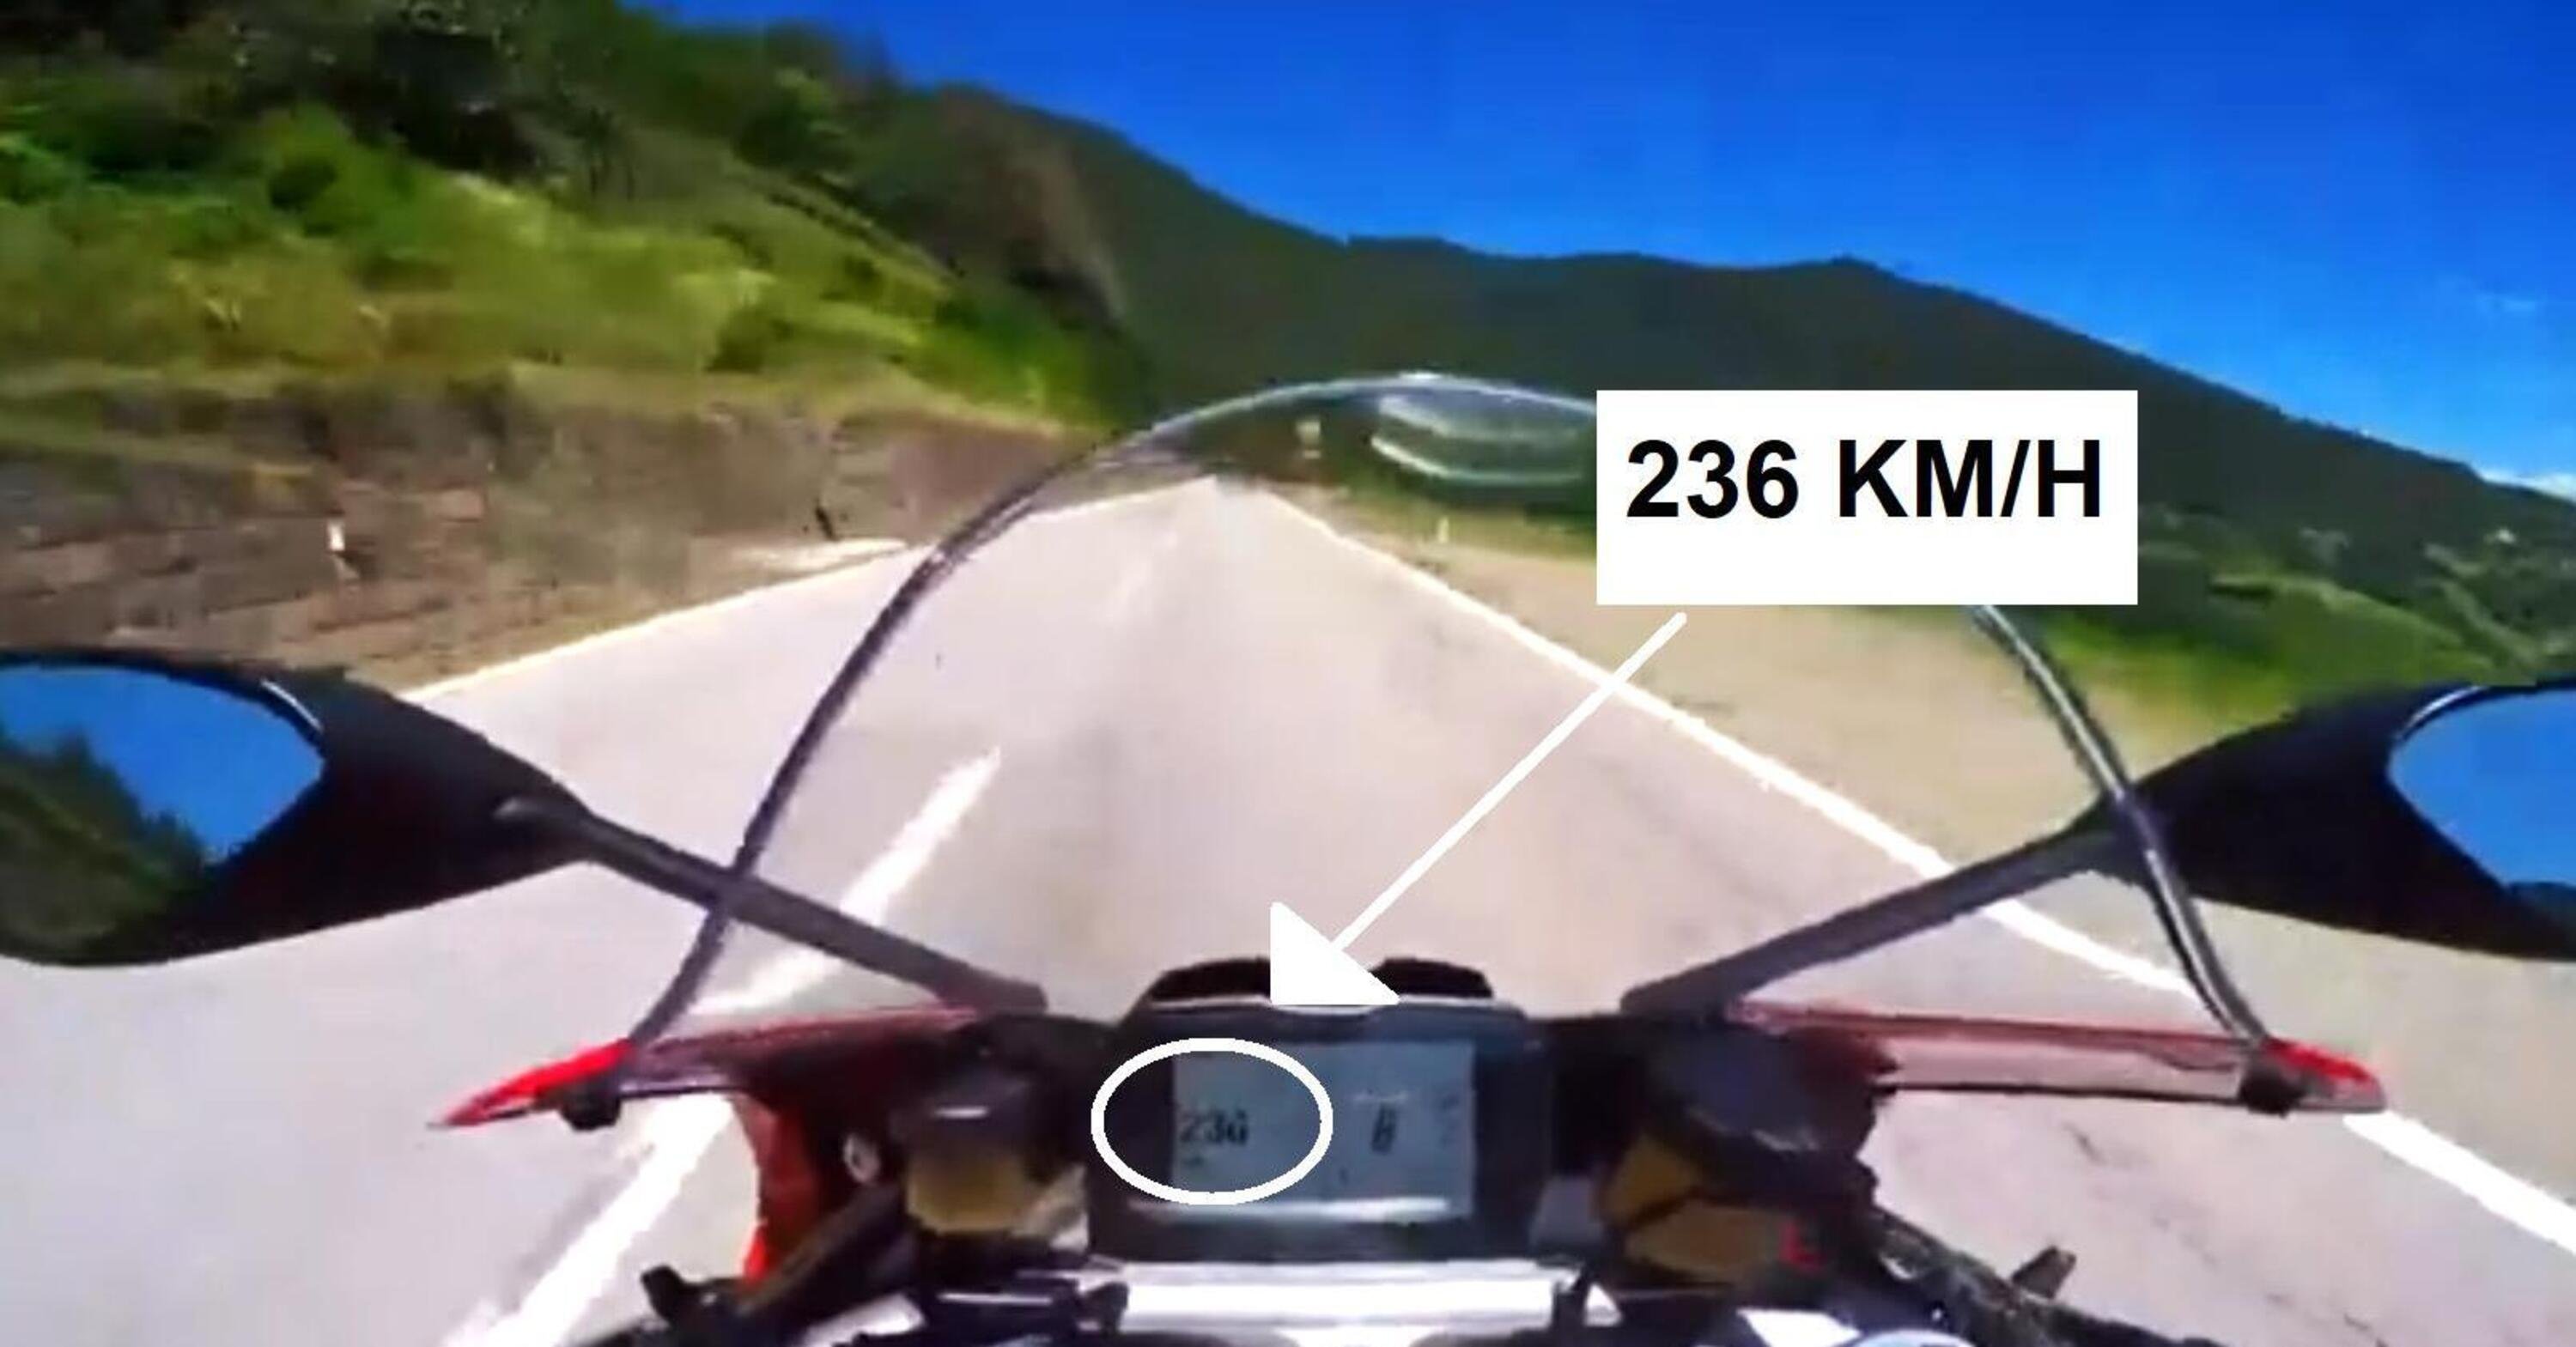 Follia: in moto a 230 km/h per le strade del Trentino [VIDEO VIRALE]